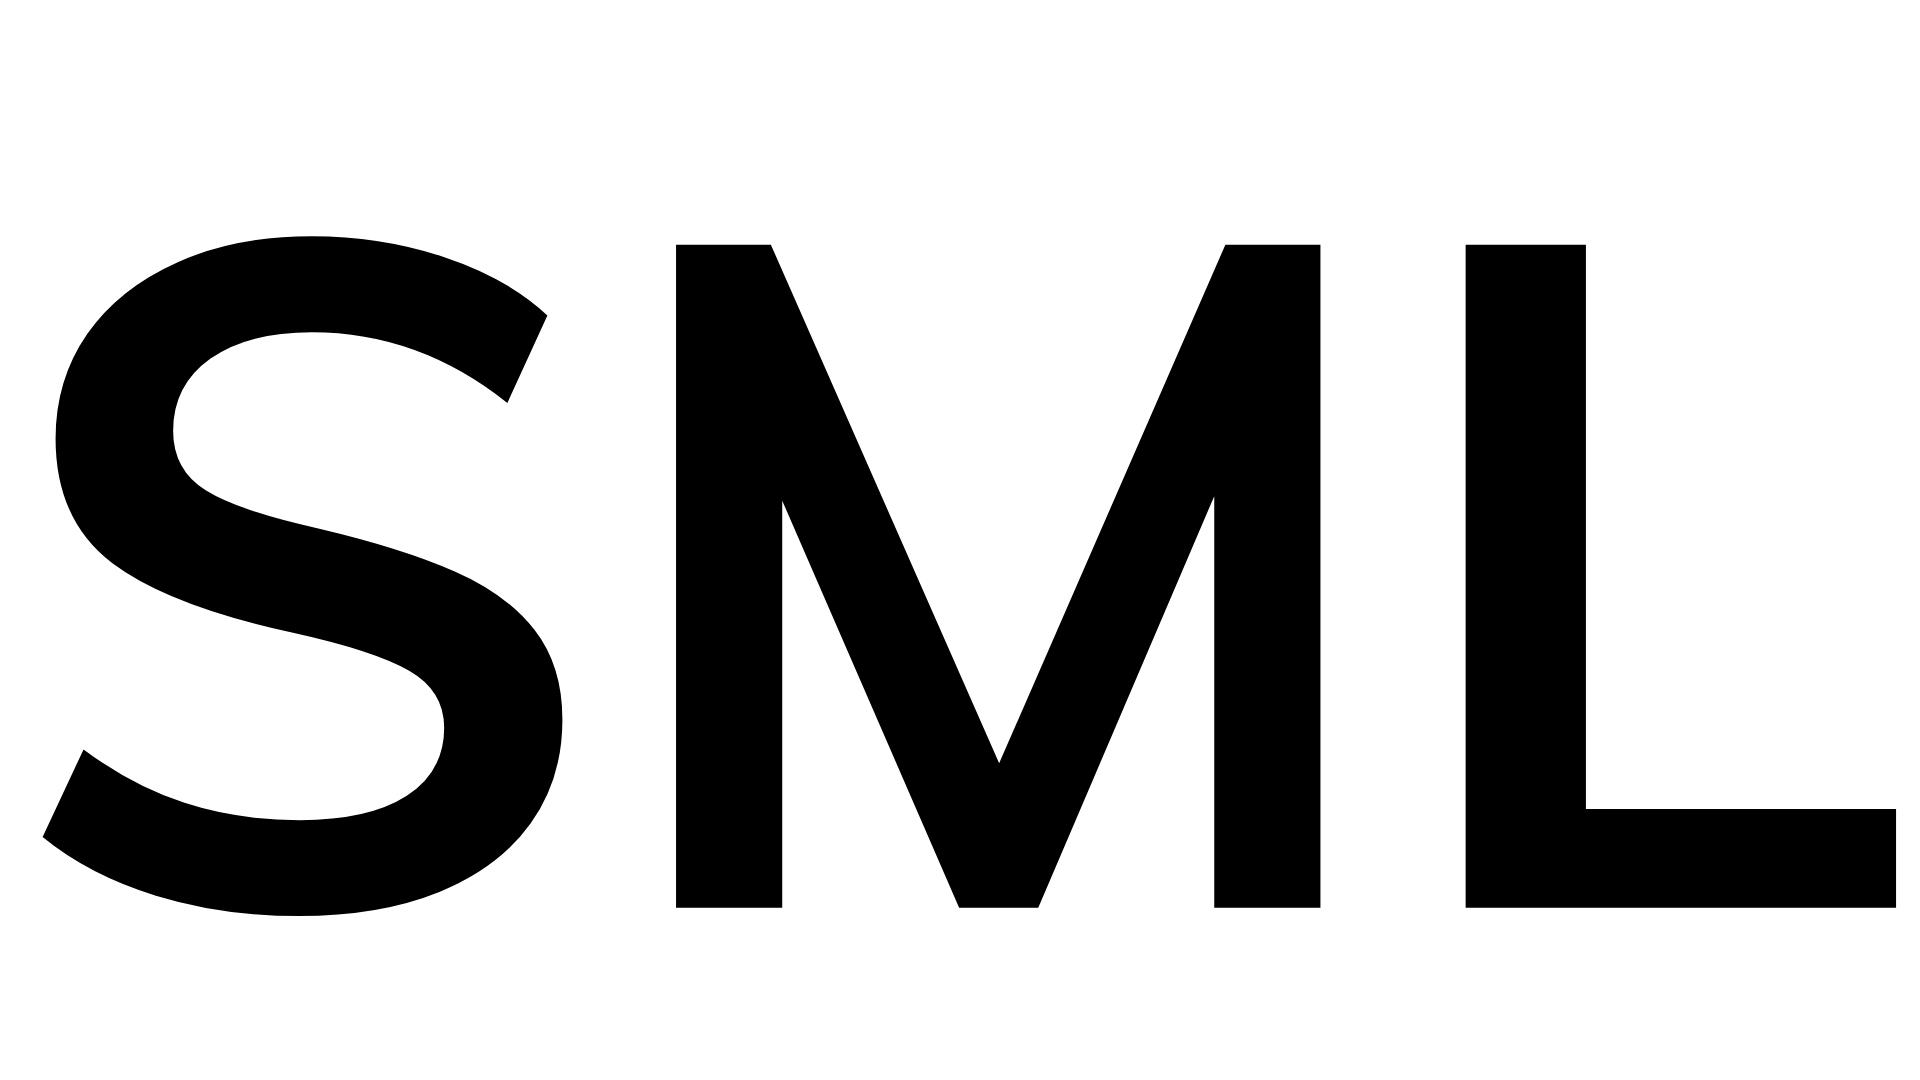 Small (SML)